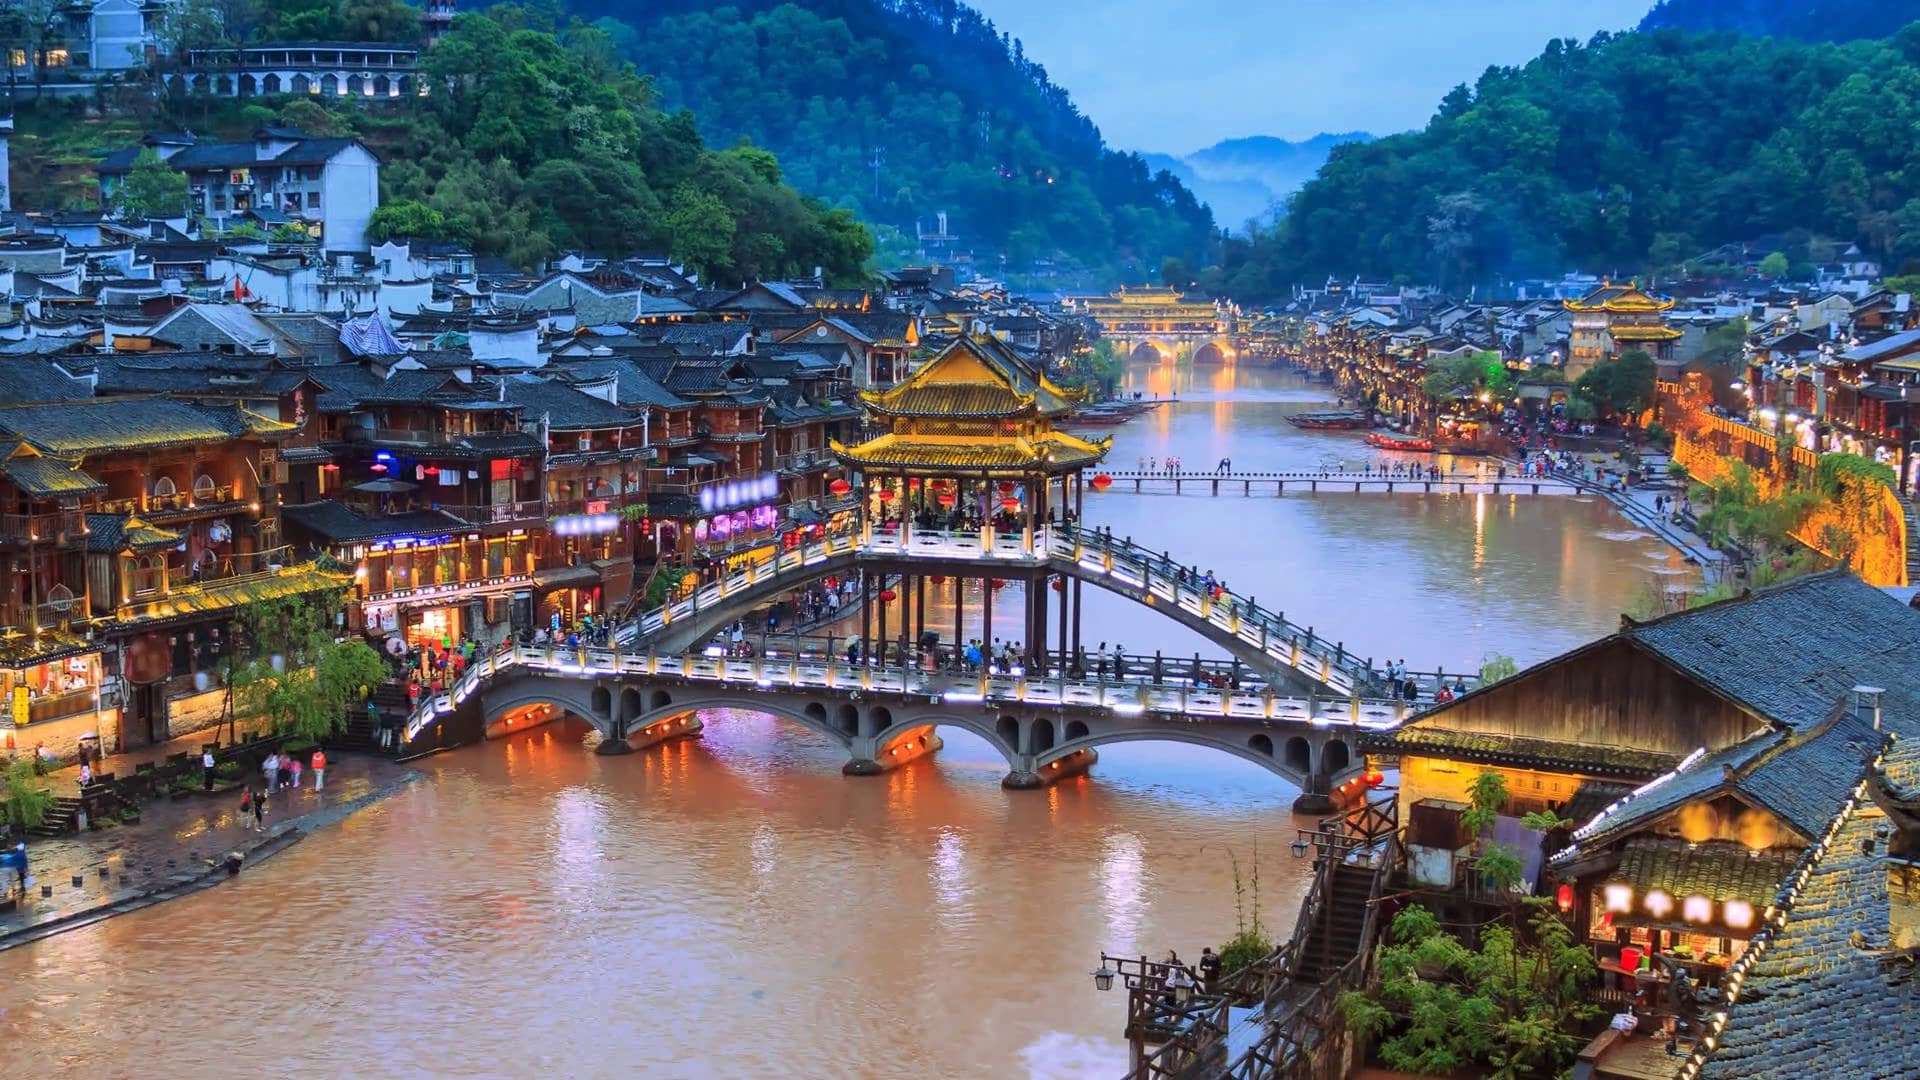 Du lịch Trung Quốc không cần hướng dẫn viên với khóa học trên Unica